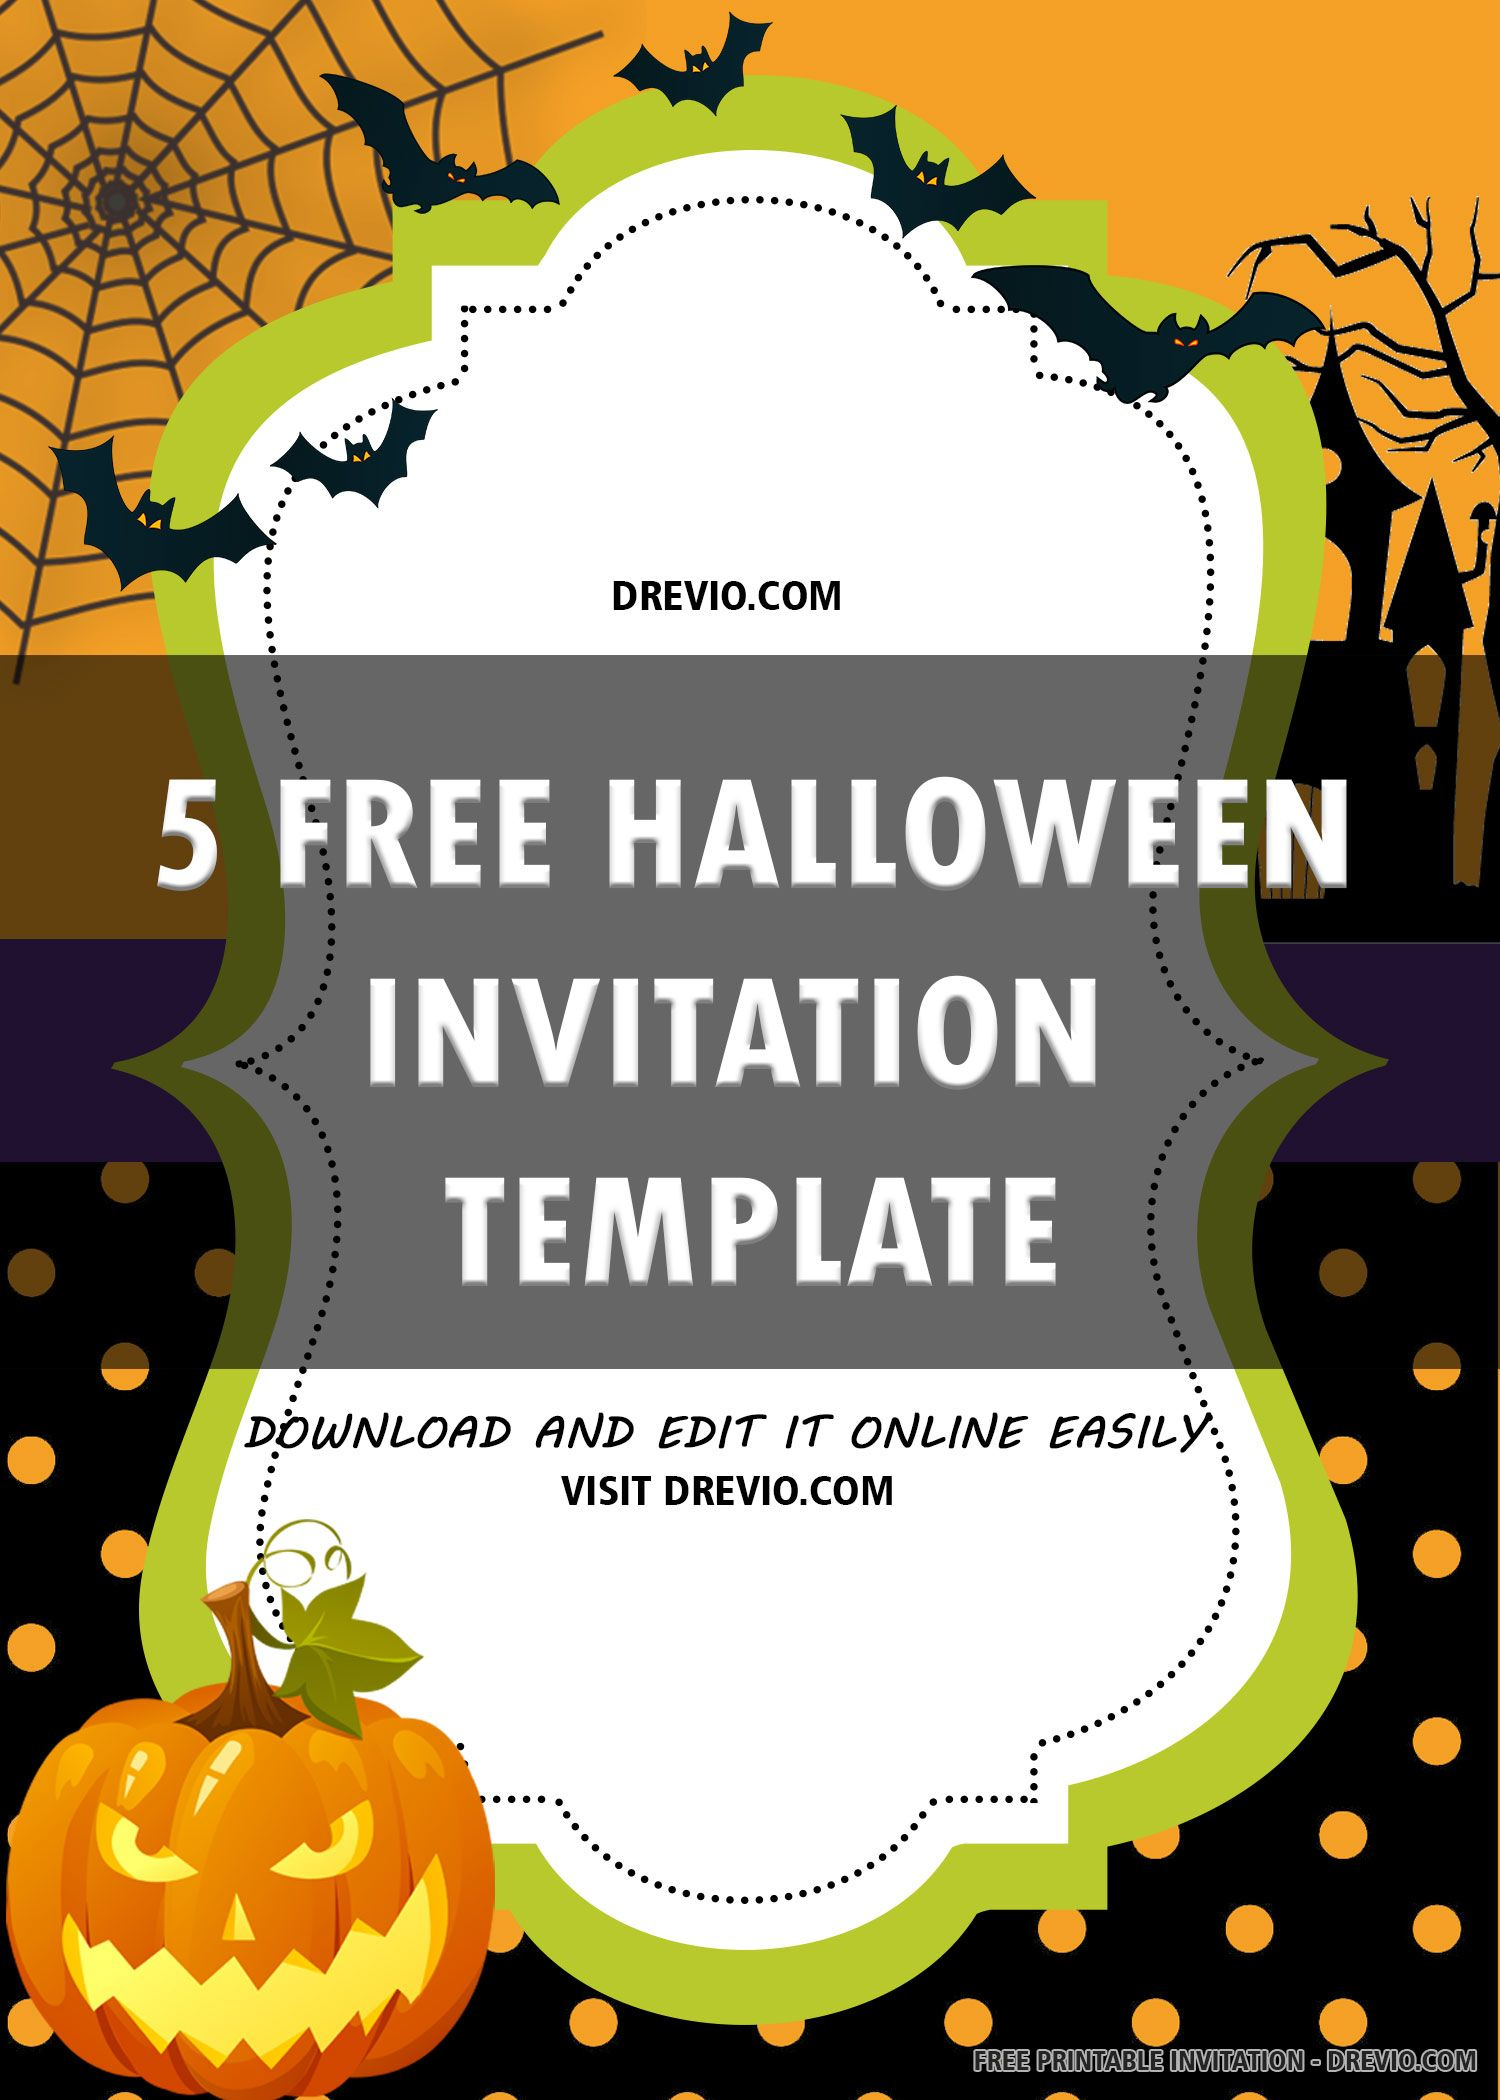 Free Printable Halloween Invitation Templates | Free Halloween with regard to Free Printable Halloween Invitations